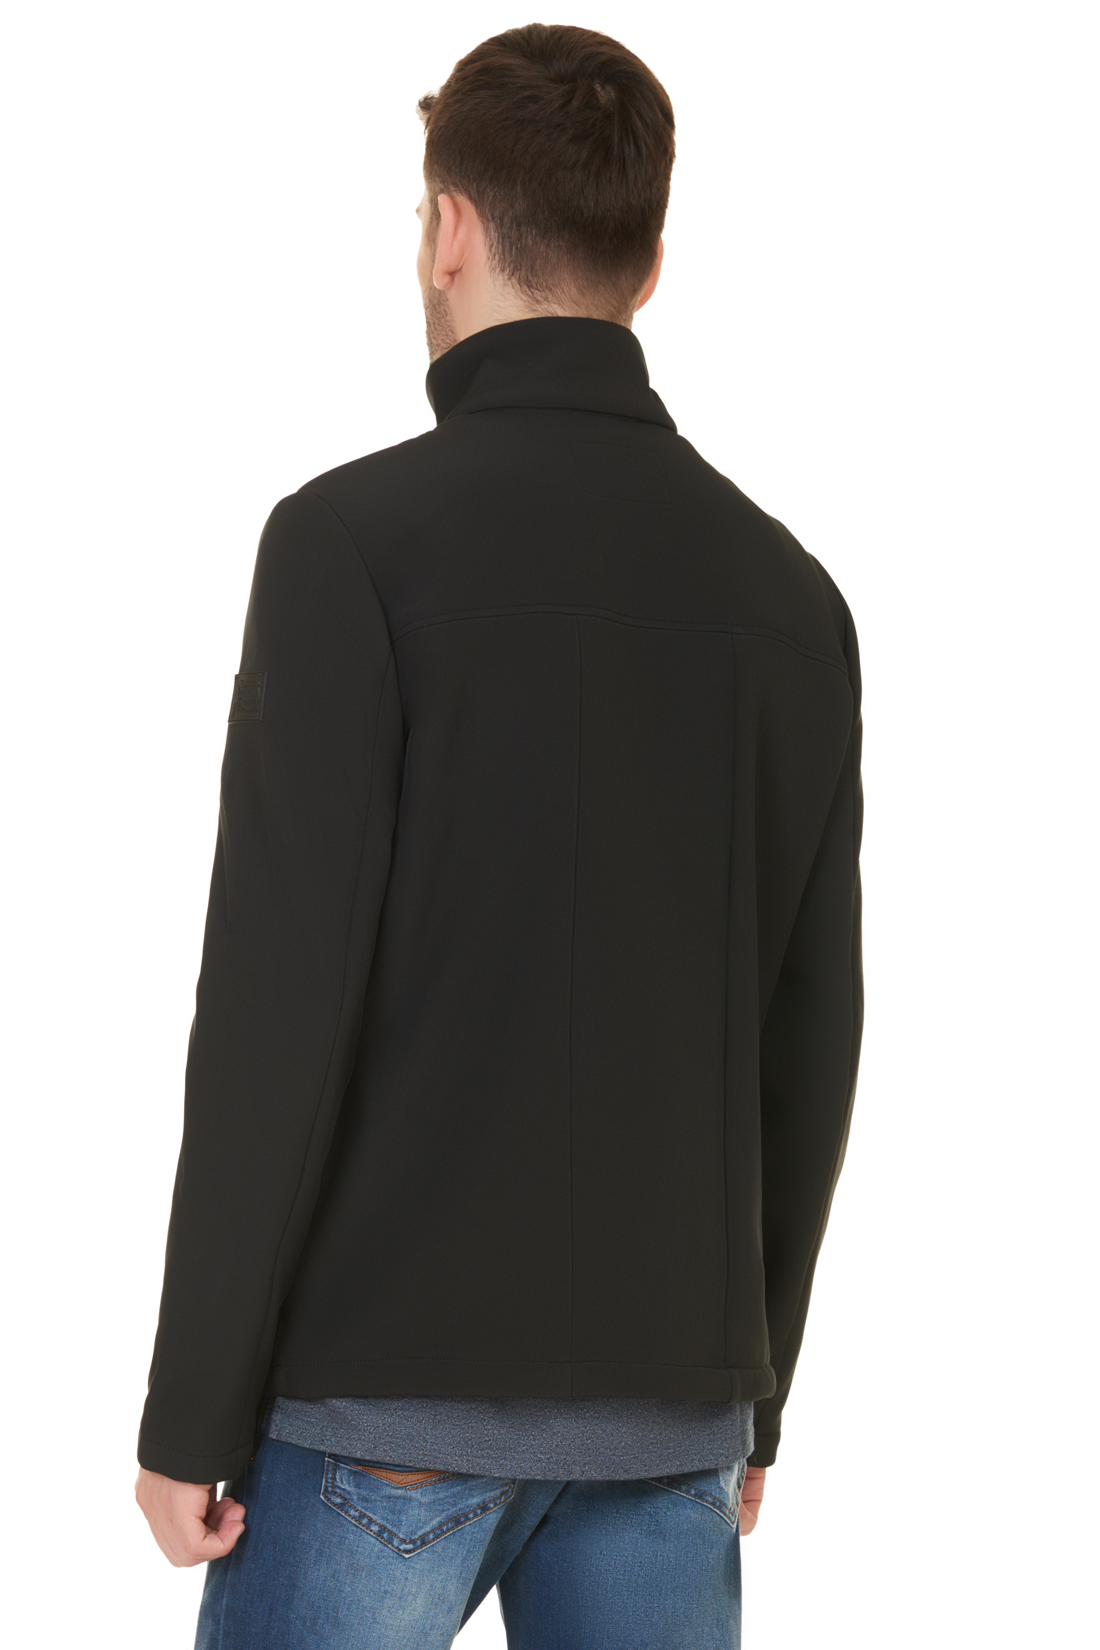 Куртка из виндблока (арт. baon B537504), размер M, цвет черный Куртка из виндблока (арт. baon B537504) - фото 2